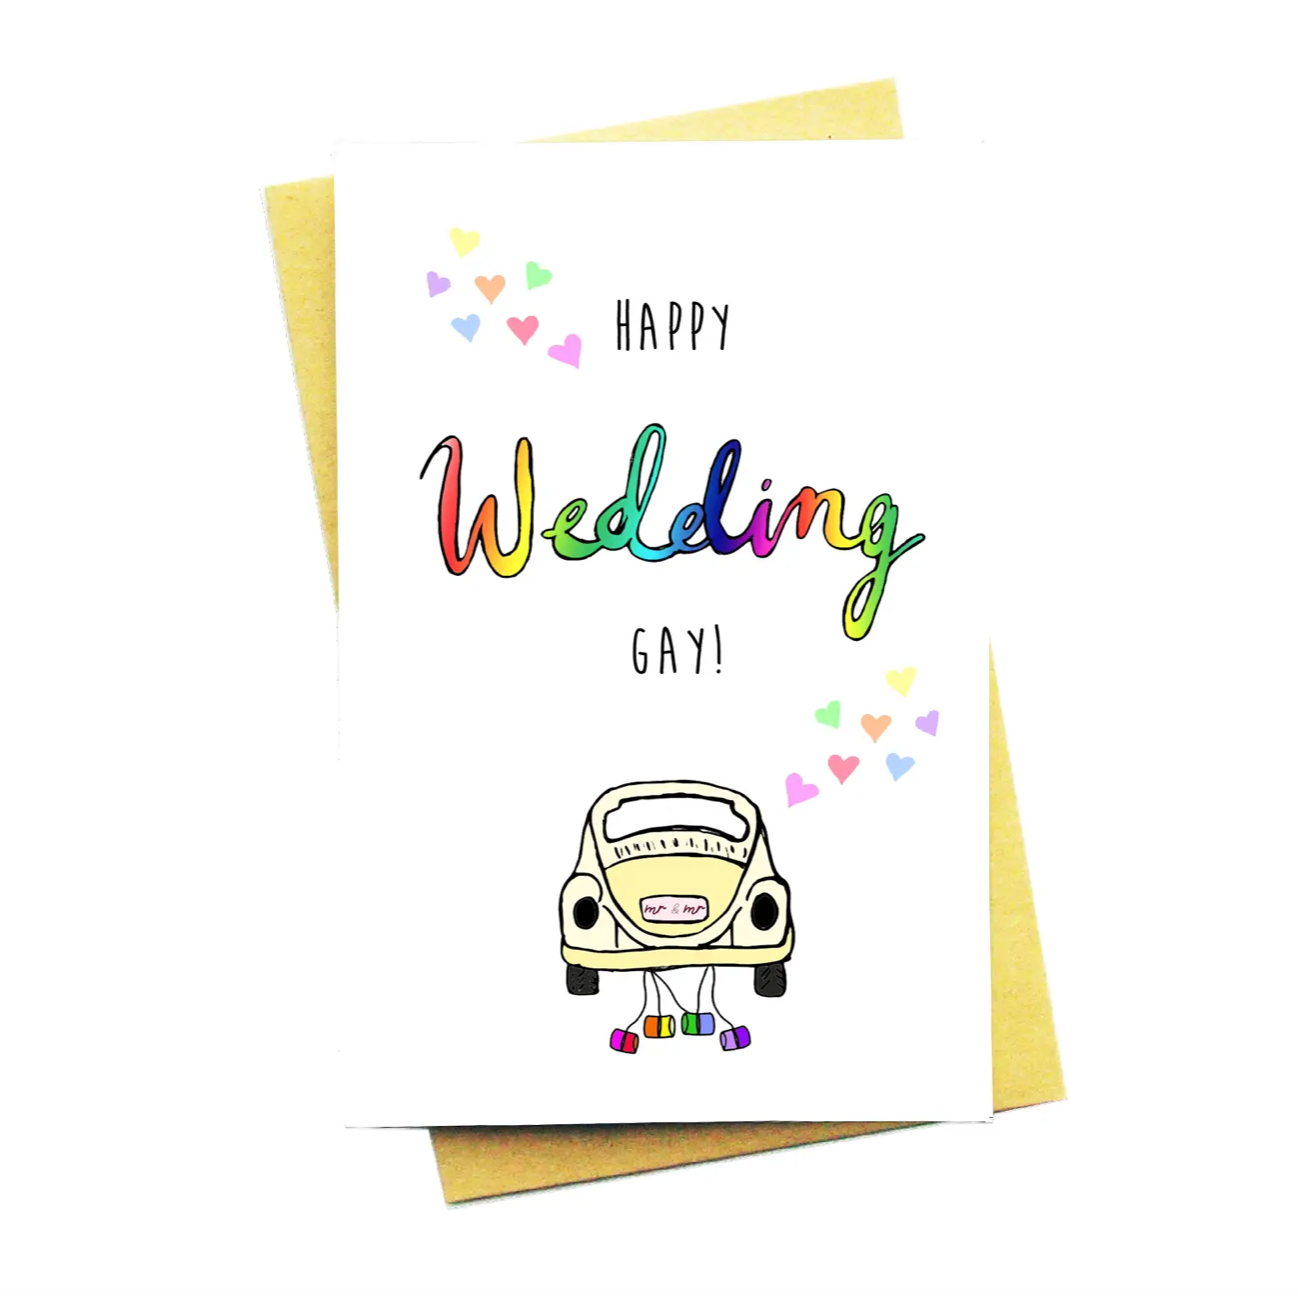 Happy wedding gay kaart